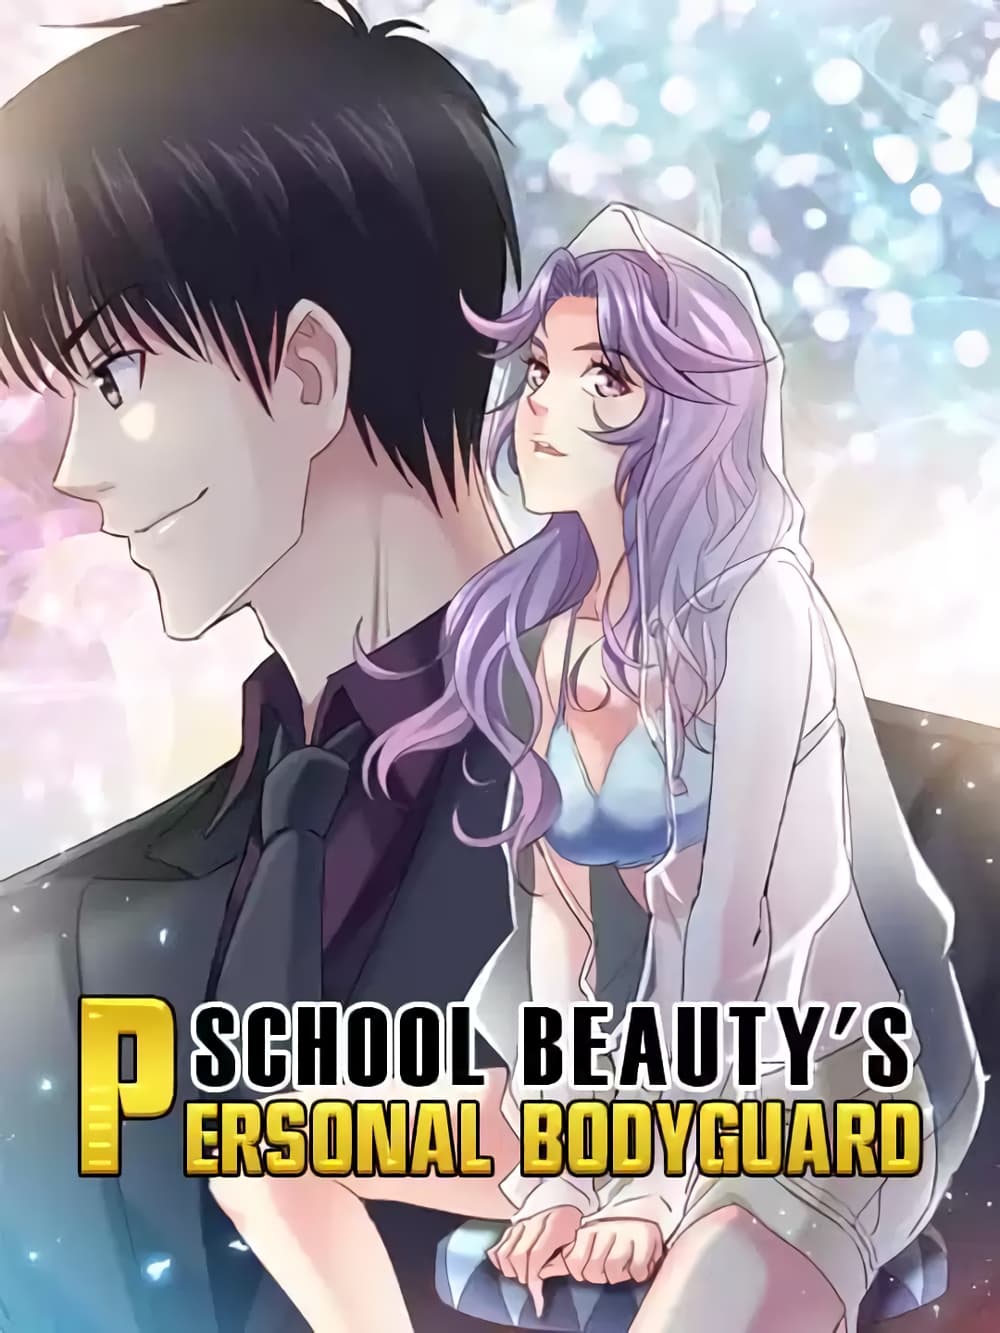 School Beauty’s Bodyguard 282 (1)